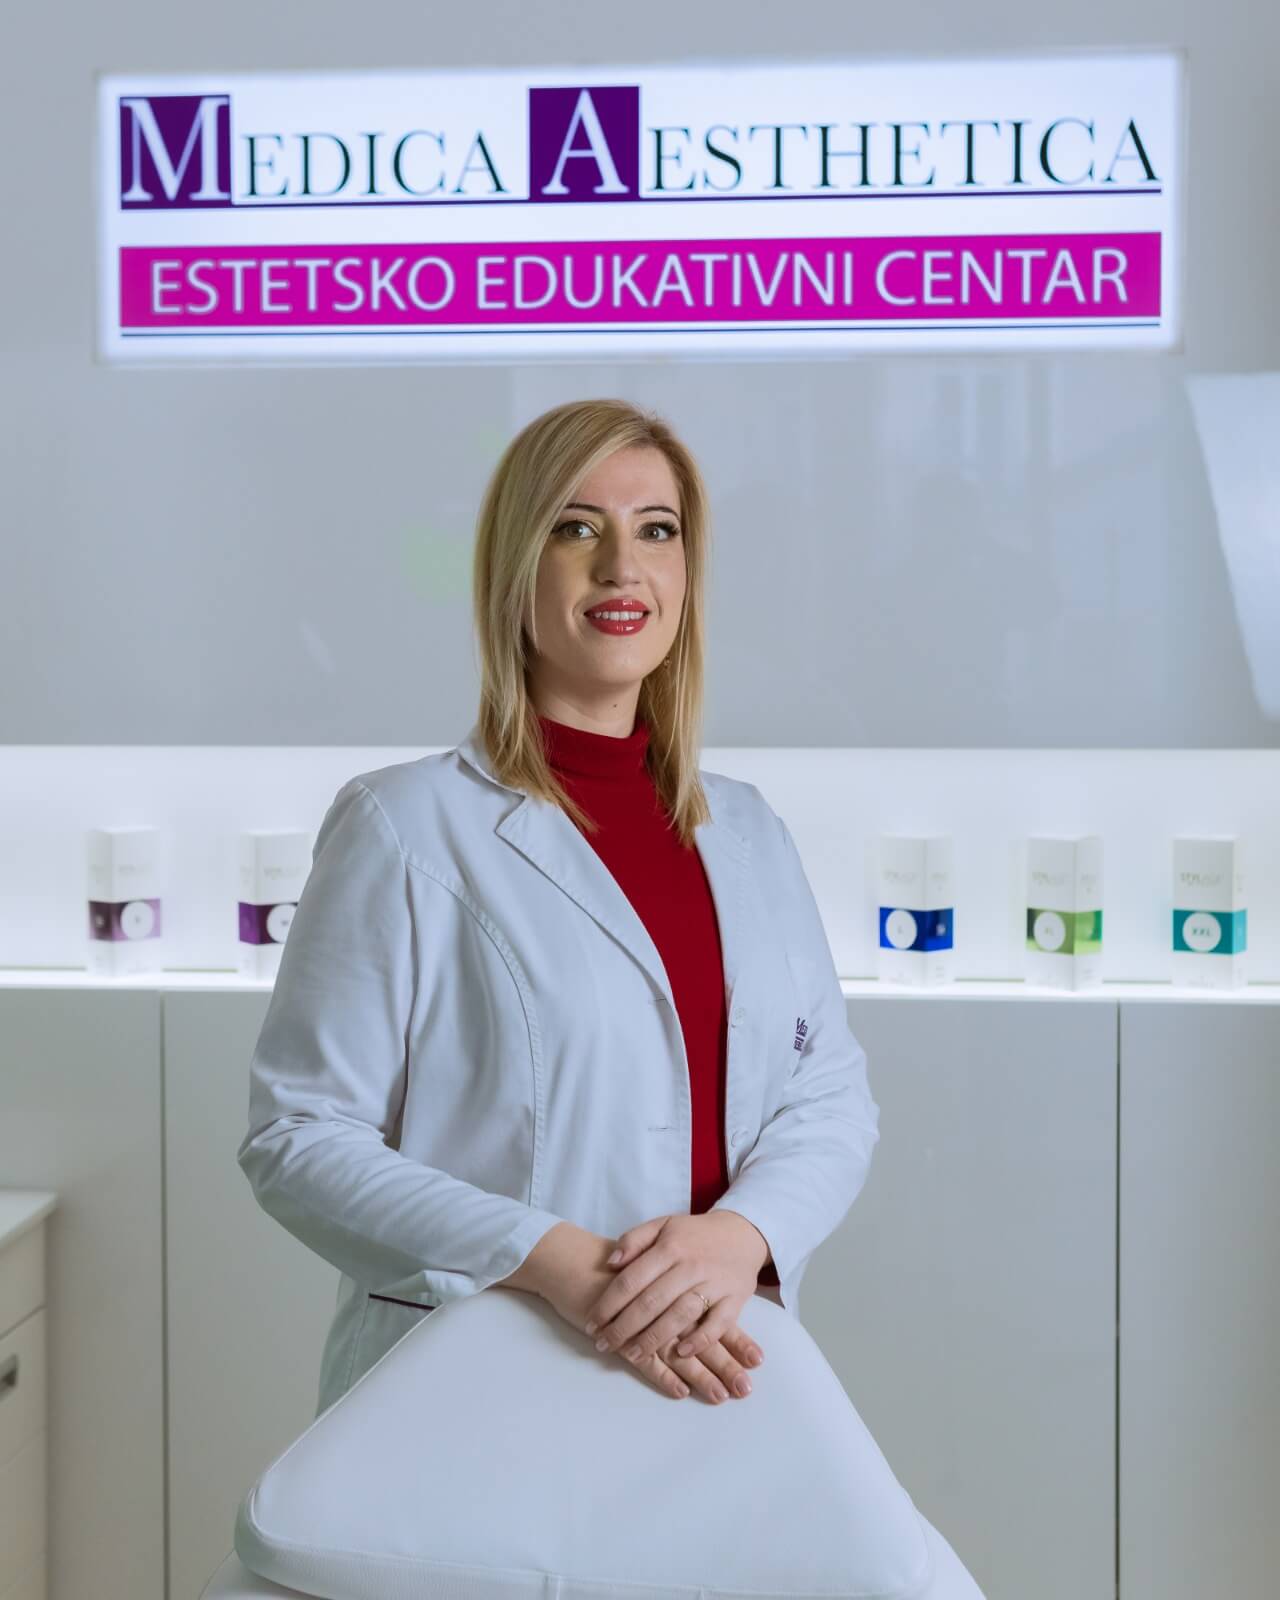 DR SCI. MED. Marina Stolić -  Medica Aestetica